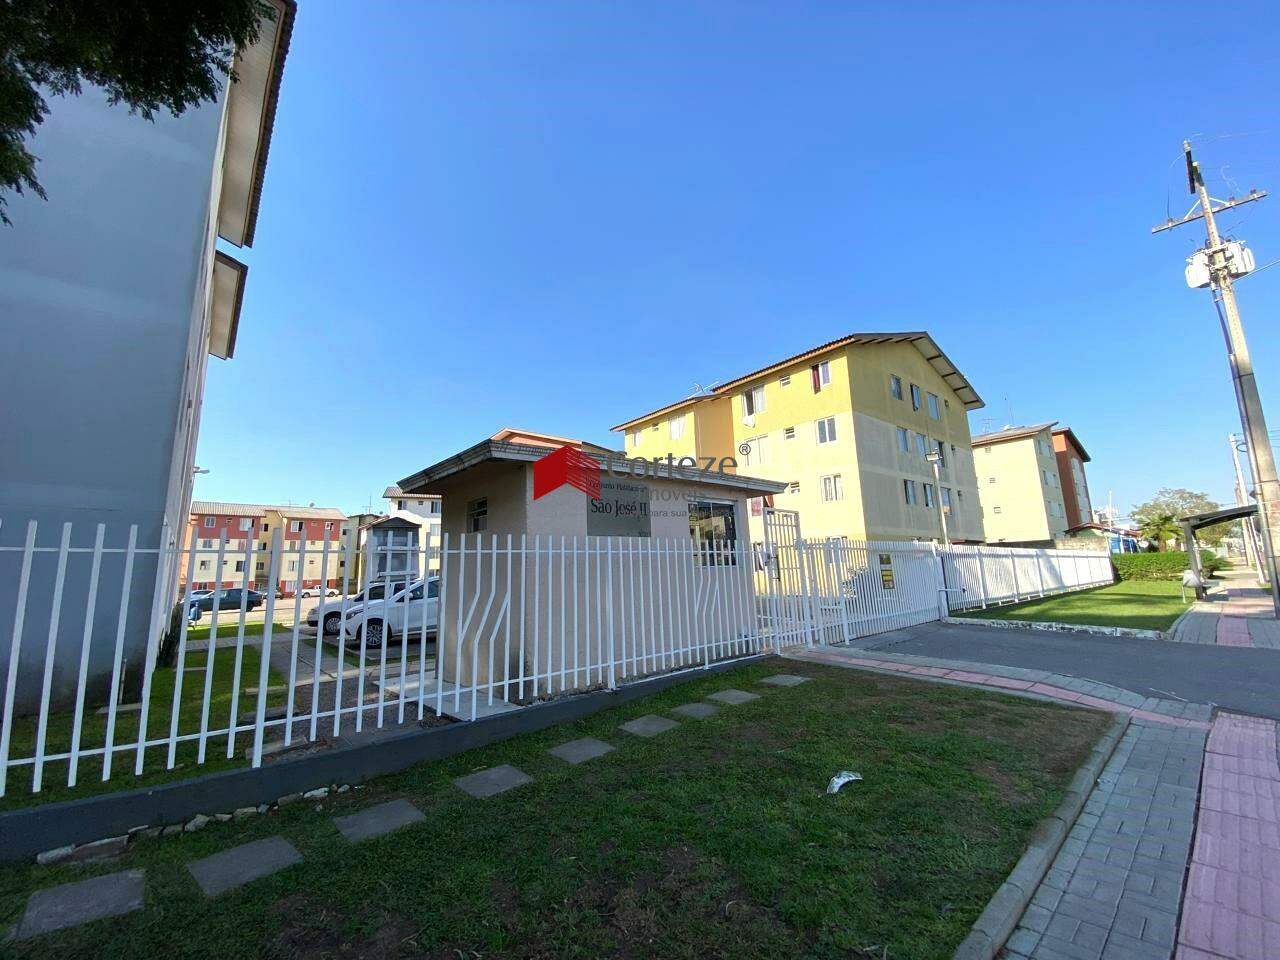 Apartamento térreo à venda de 2 quartos, localizado no Afonso Pena.